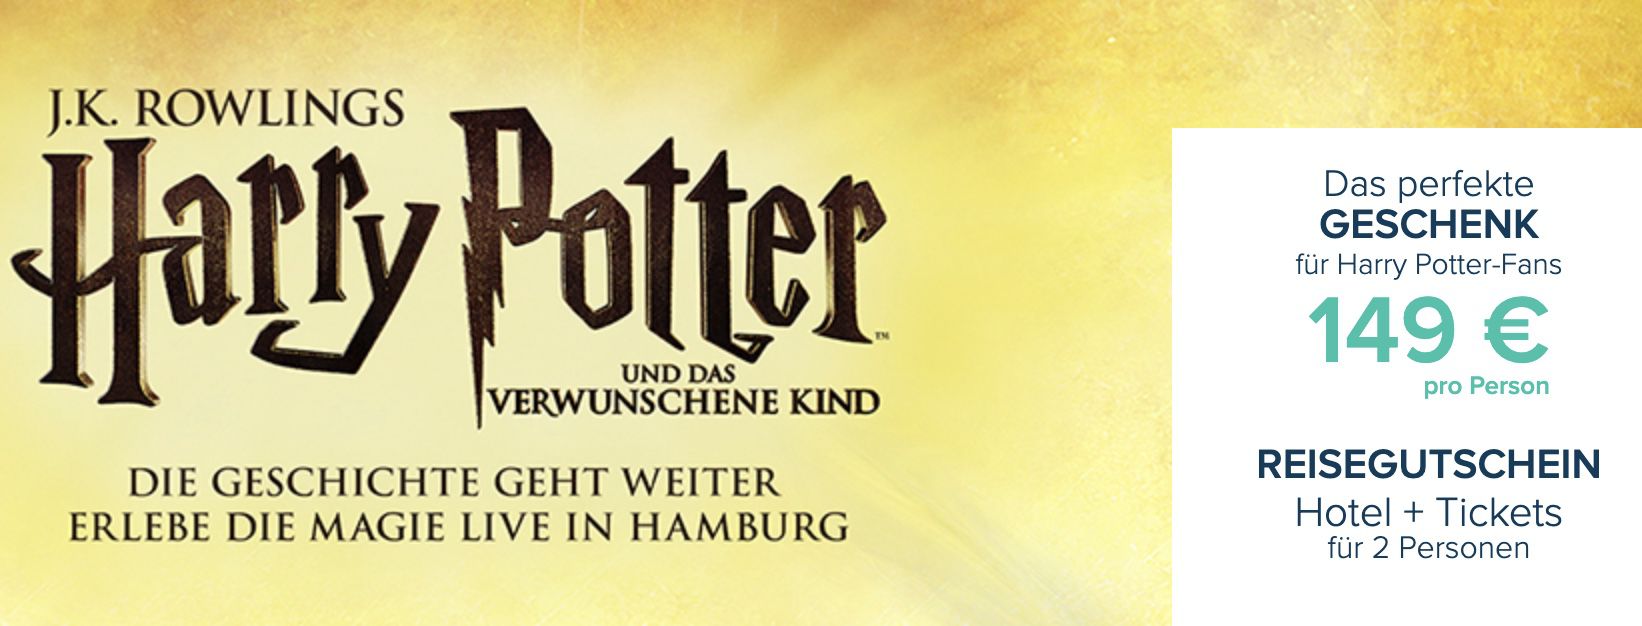 Harry Potter Theaterstück + Hotel mit Frühstück für 149€ p.P.